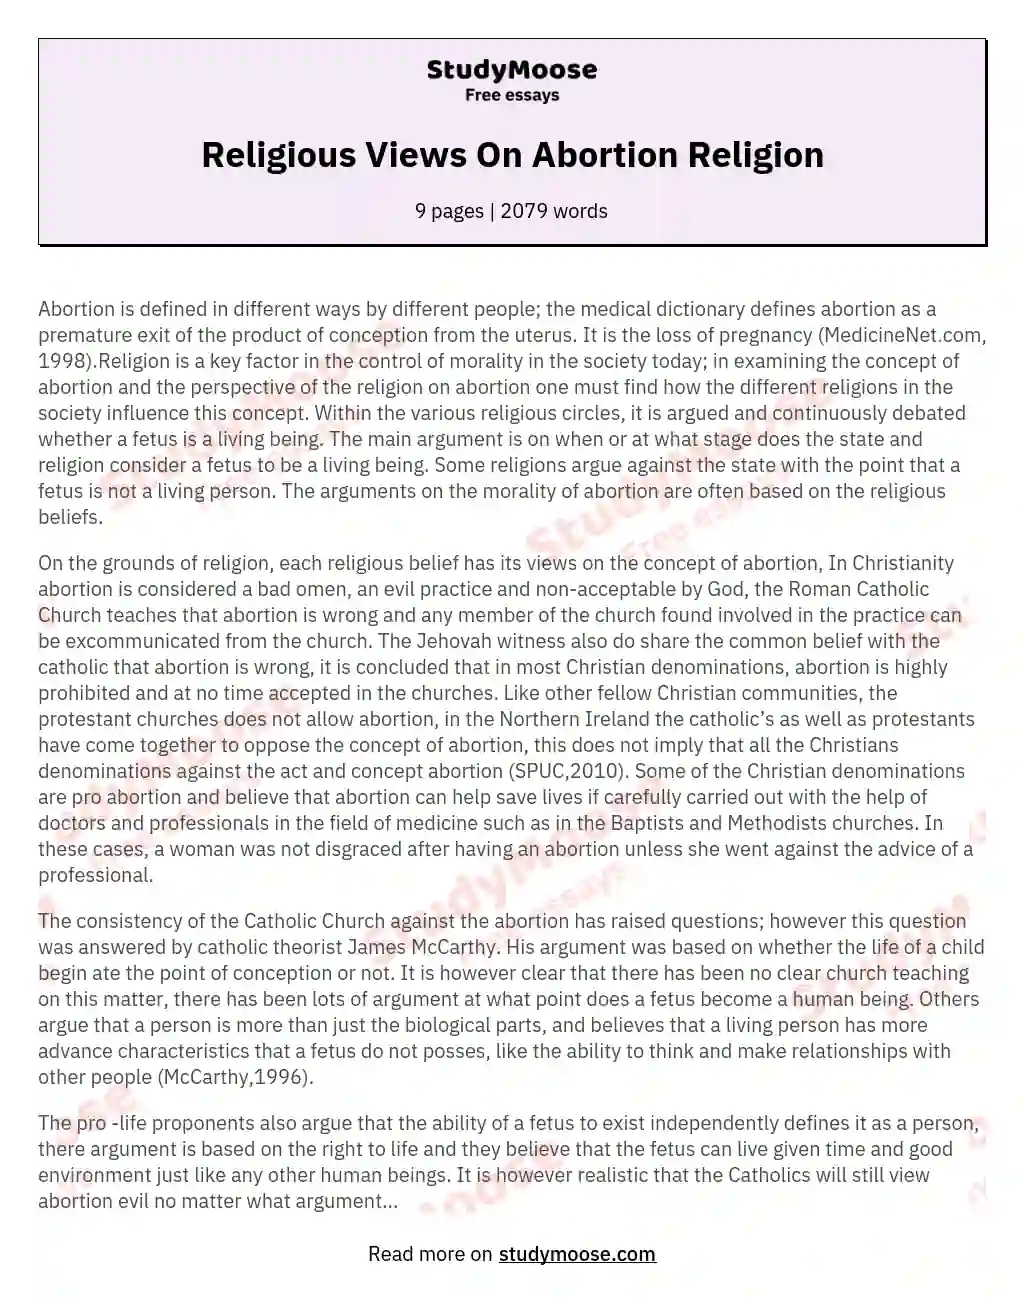 Religious Views On Abortion Religion essay